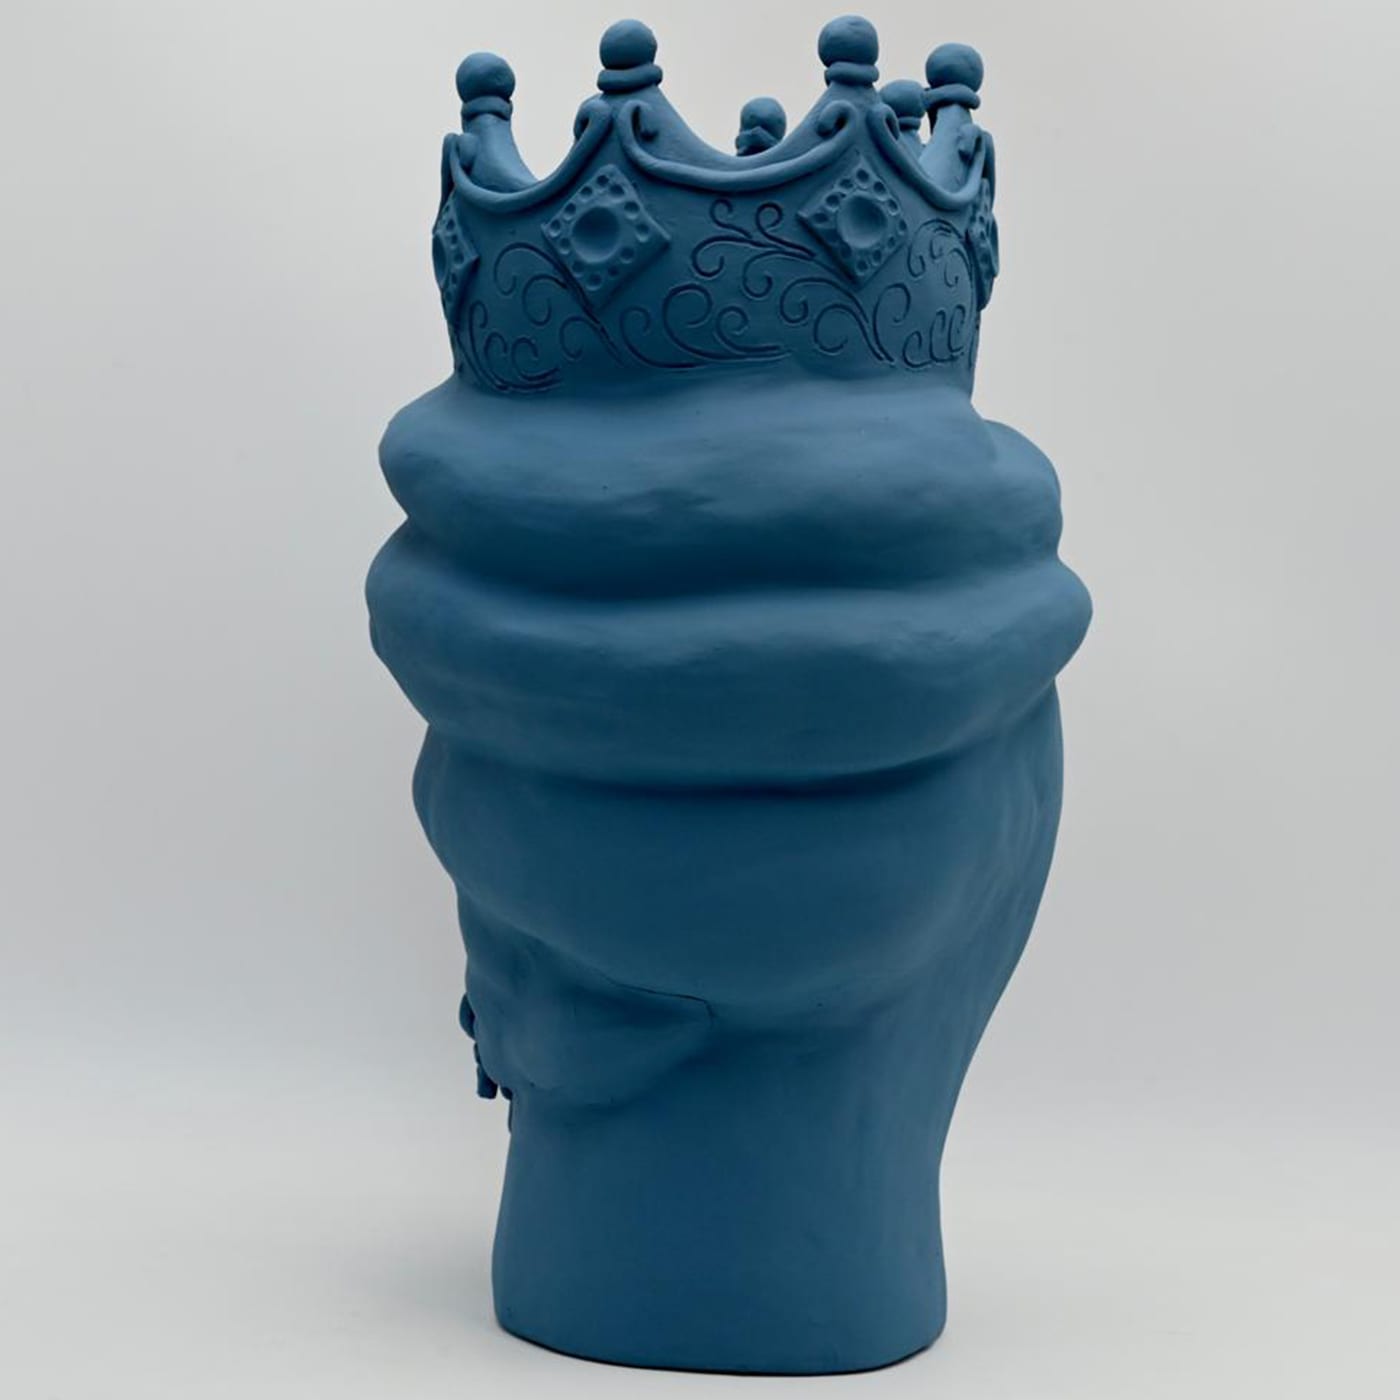 Moor's Head Sculpture in Blue Matte